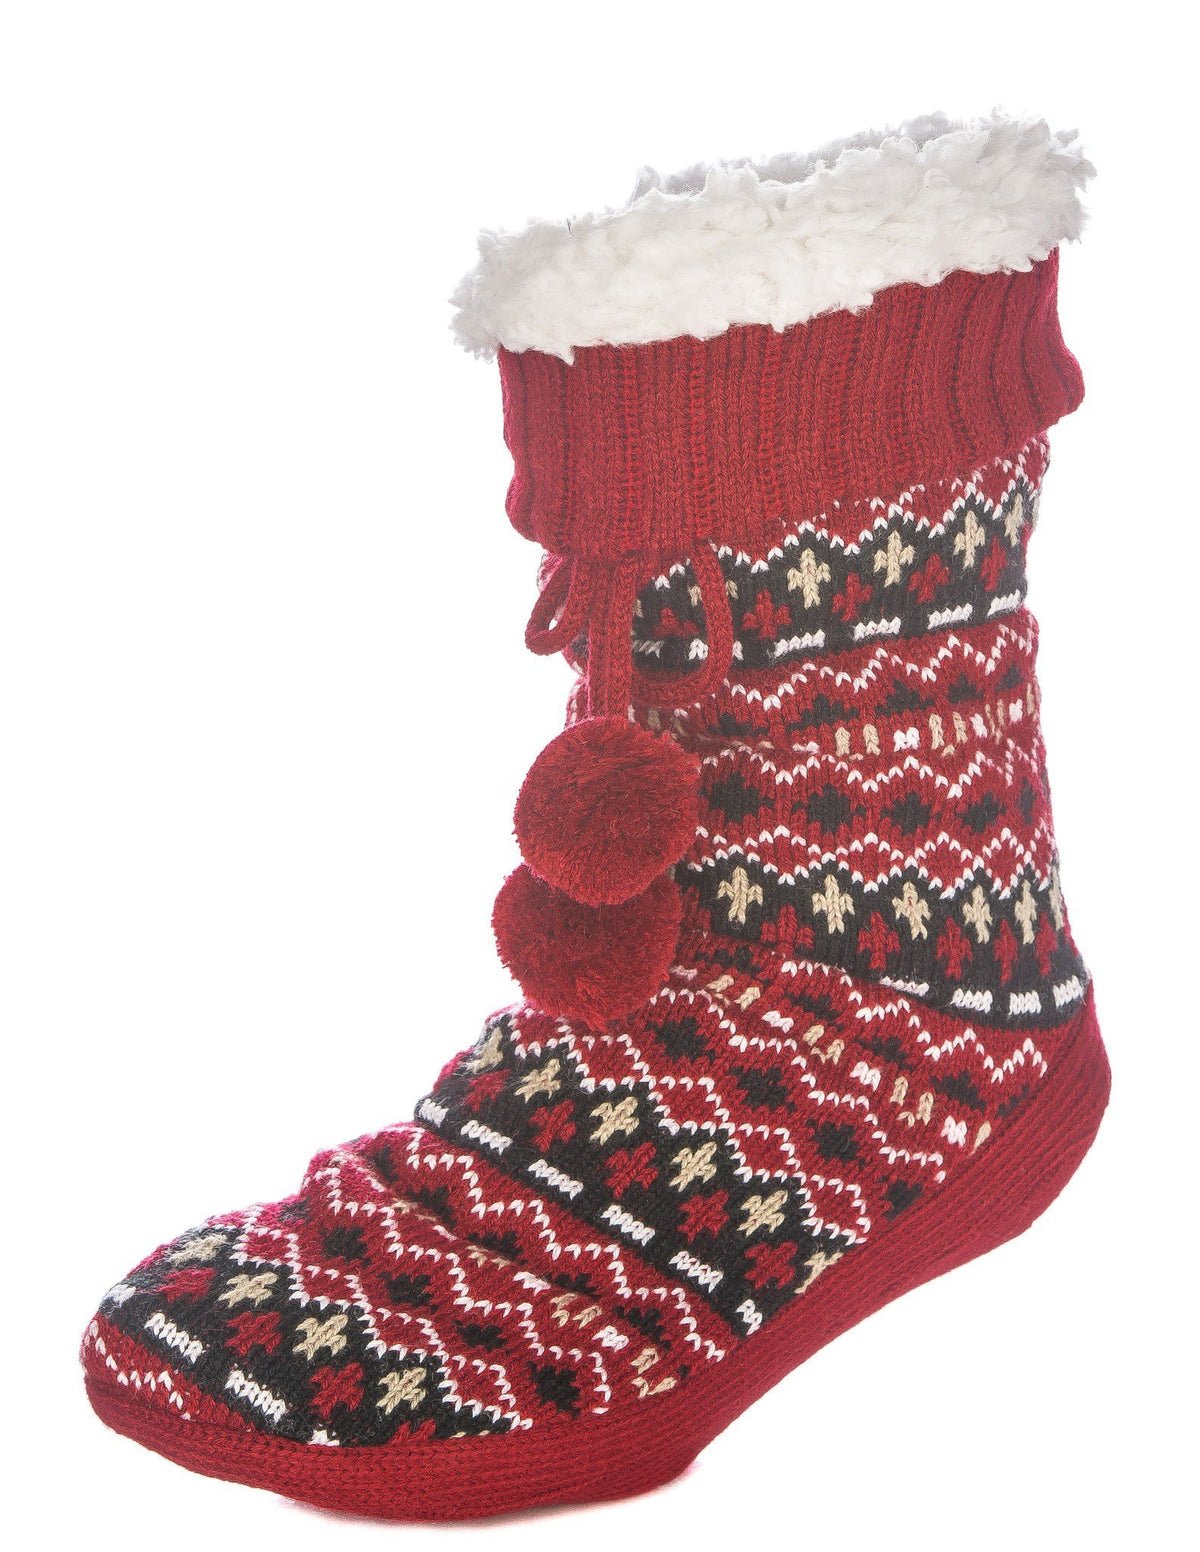 Women's Arctic Tall Slipper Socks - Burgundy/Black